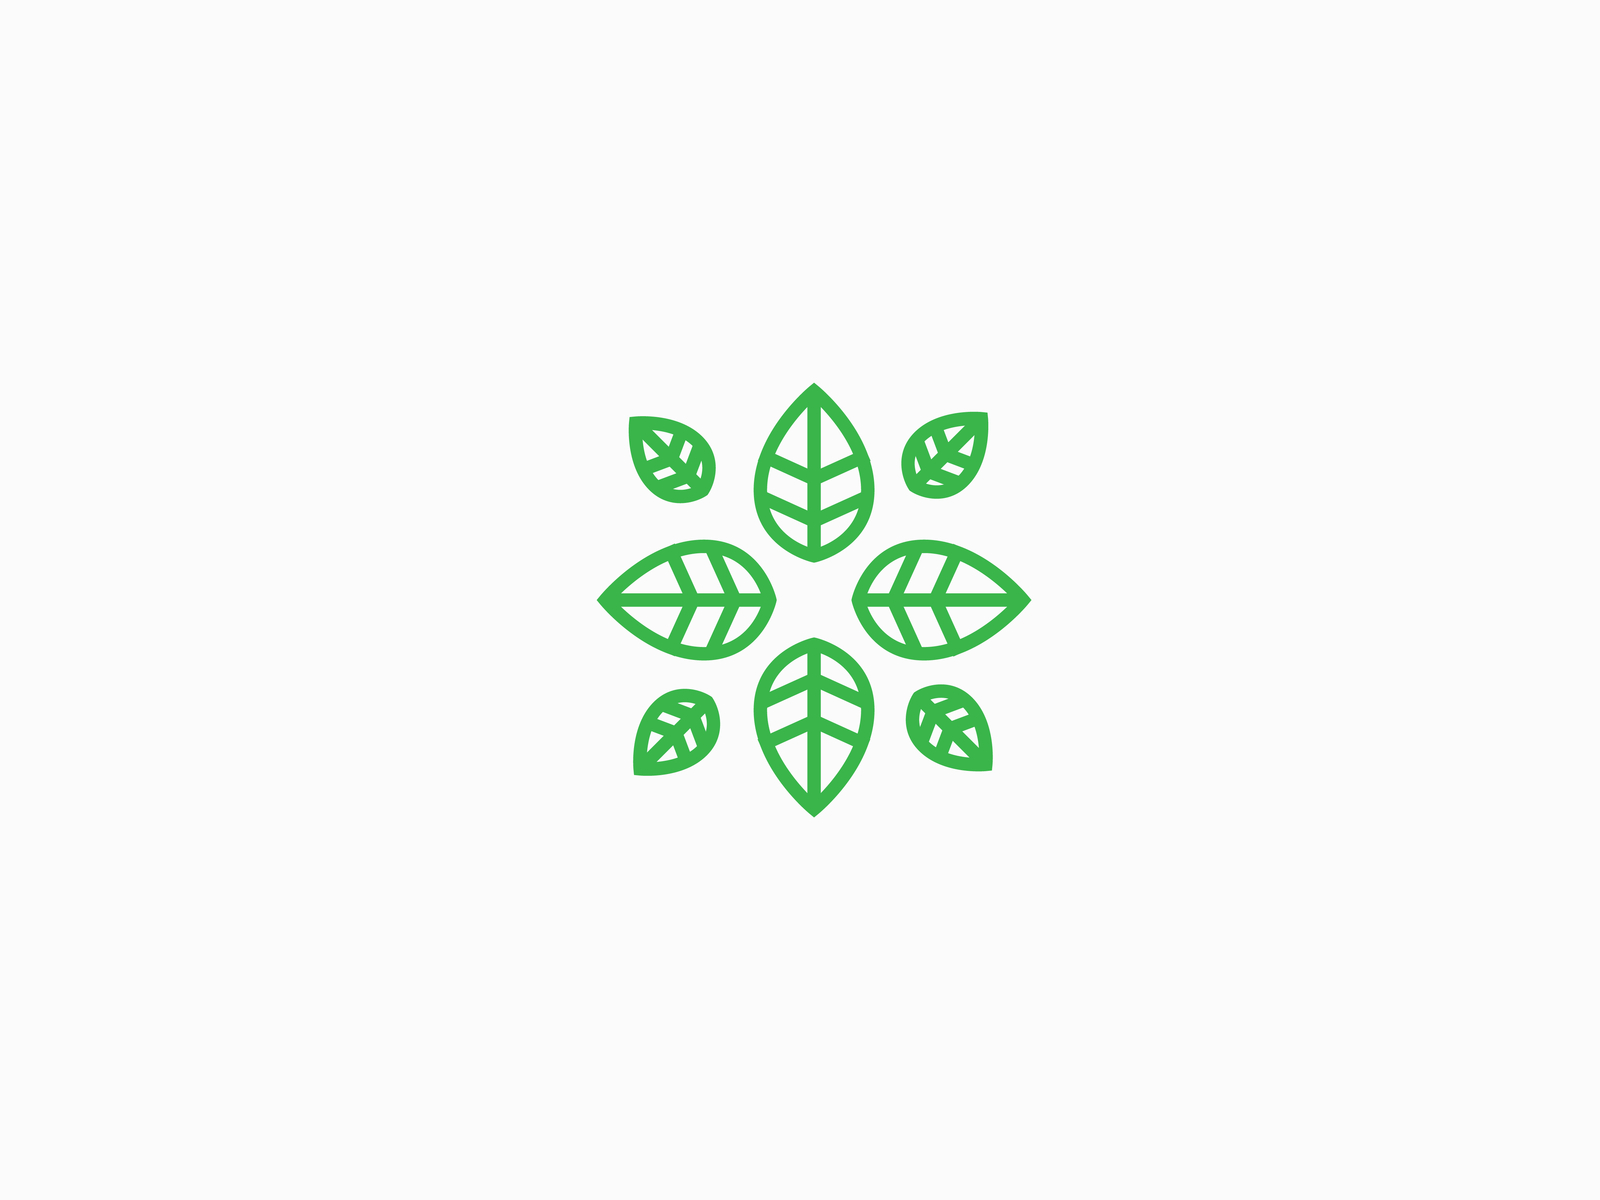 Leaf wellness logo concept by RantauCreative on Dribbble